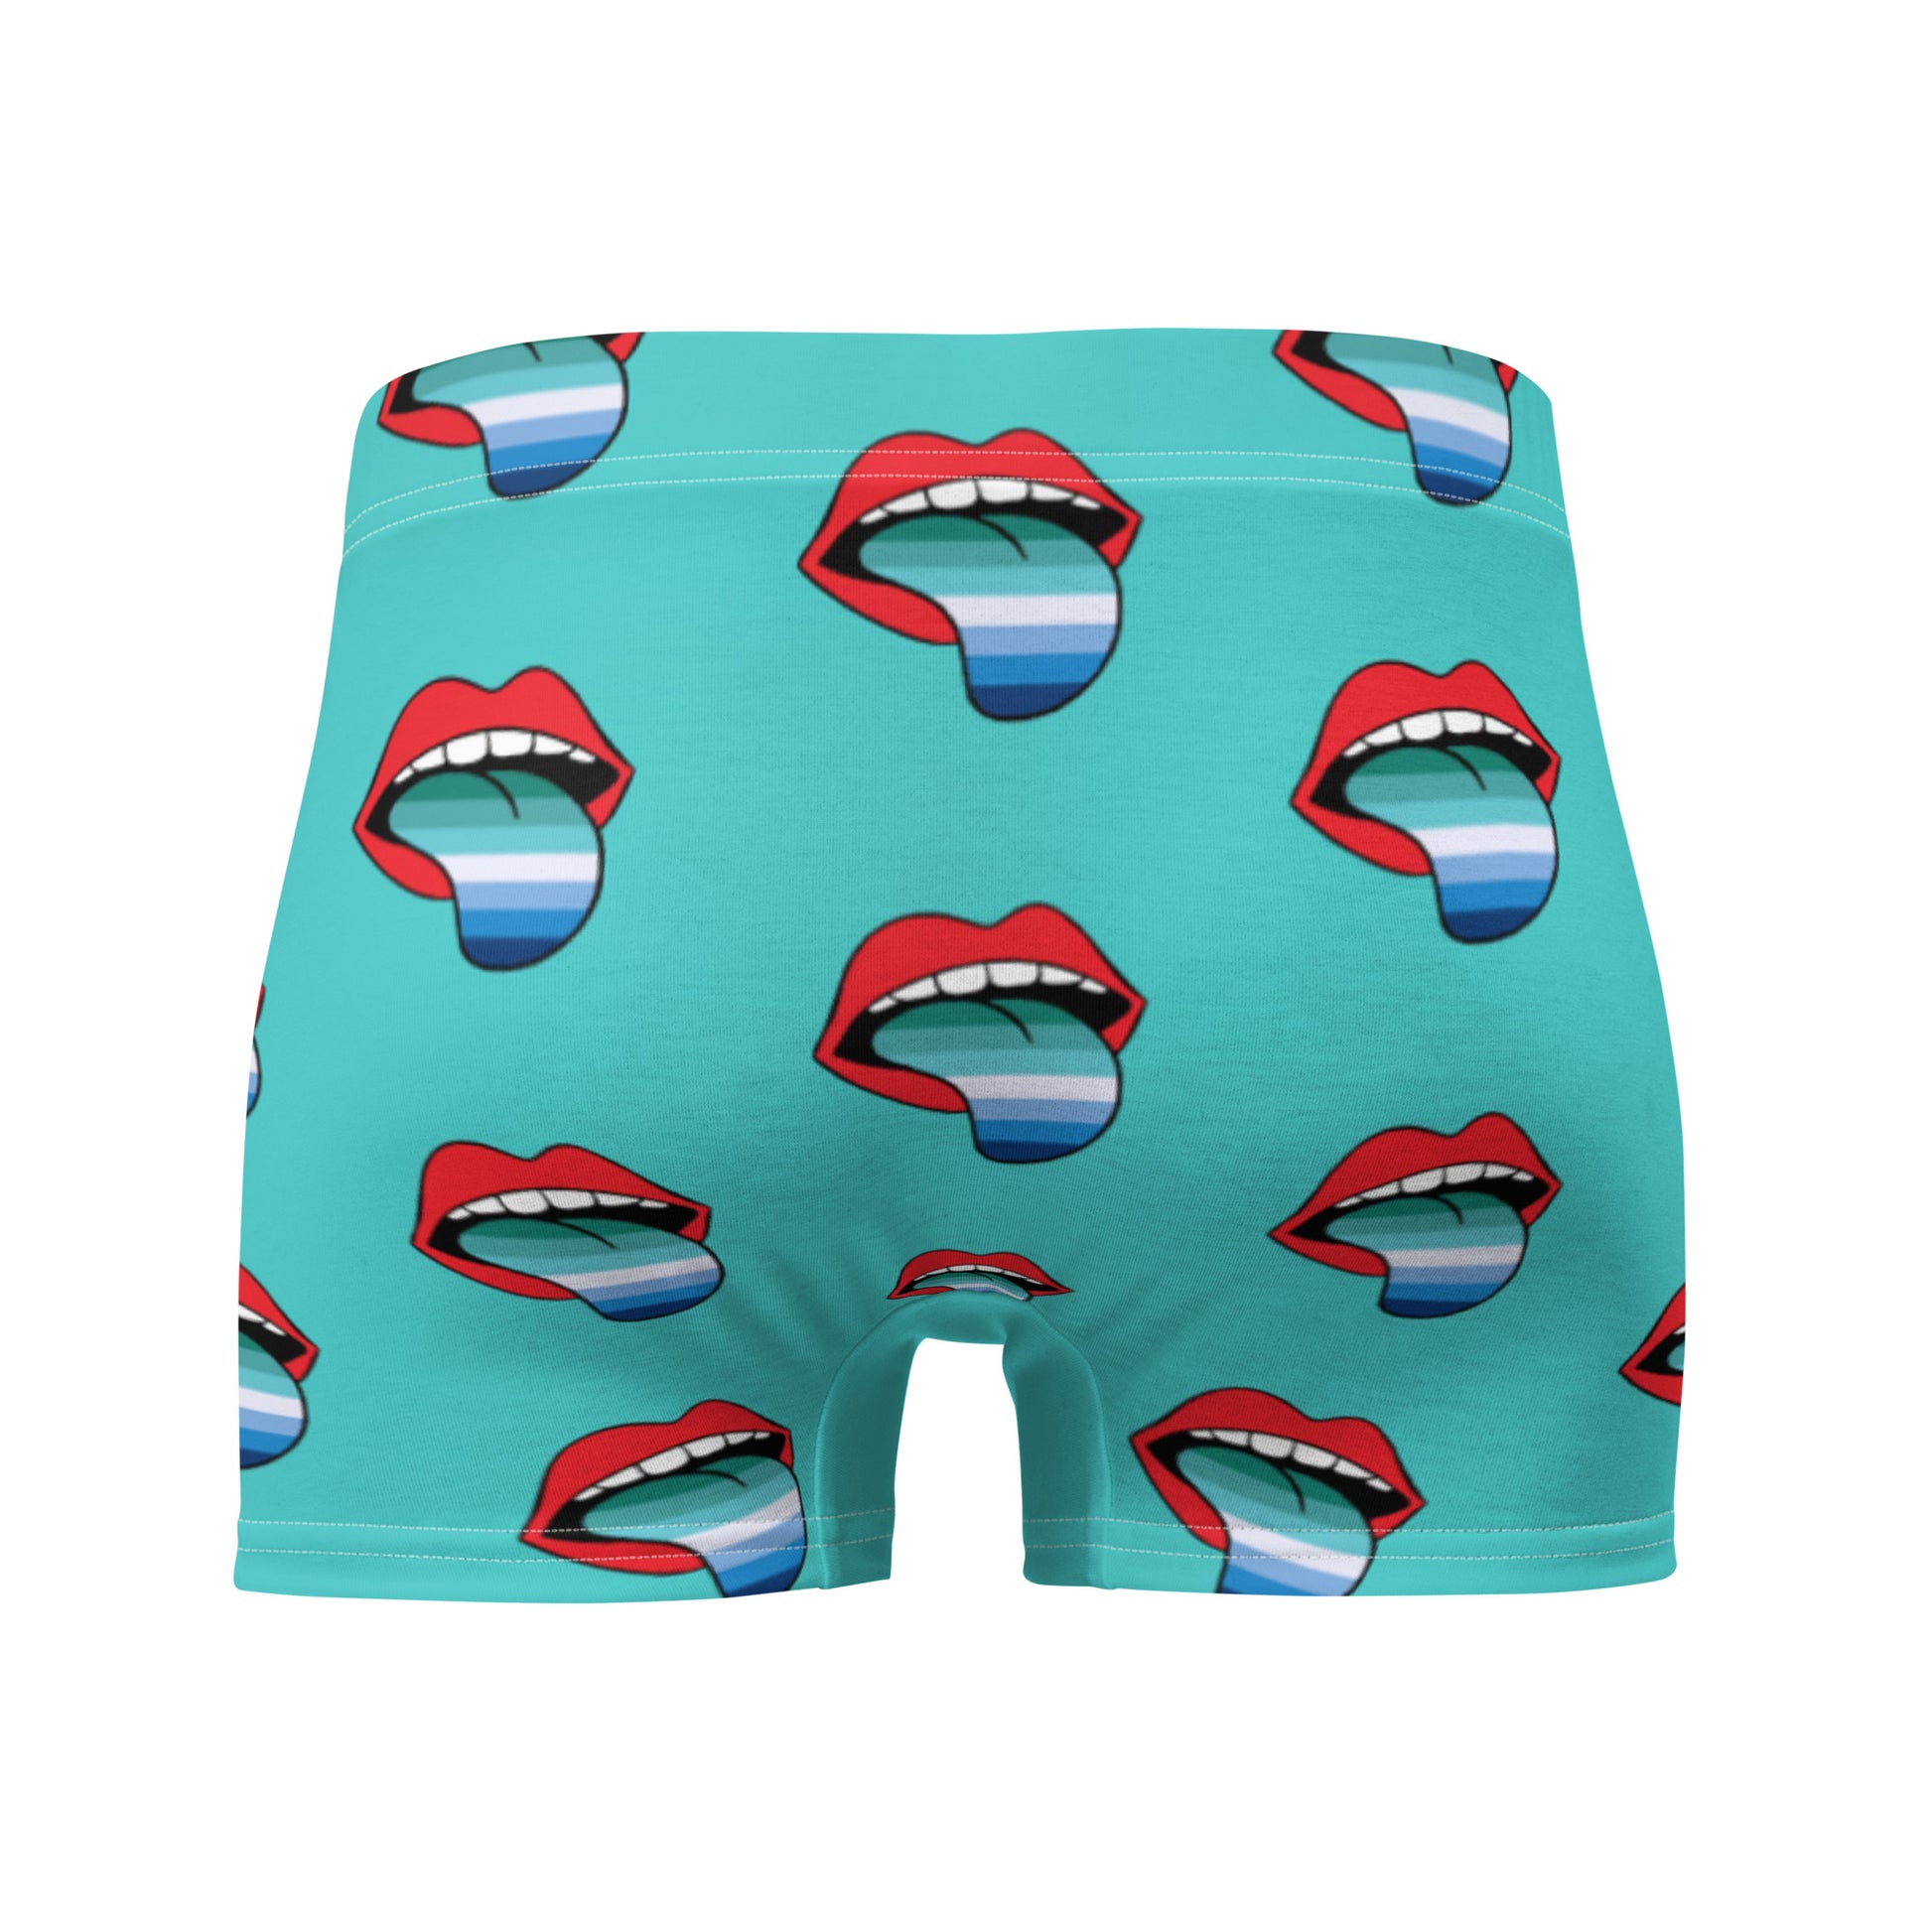 Gay MLM Vincian Pride Lips and Tongue Boxer Briefs Underwear